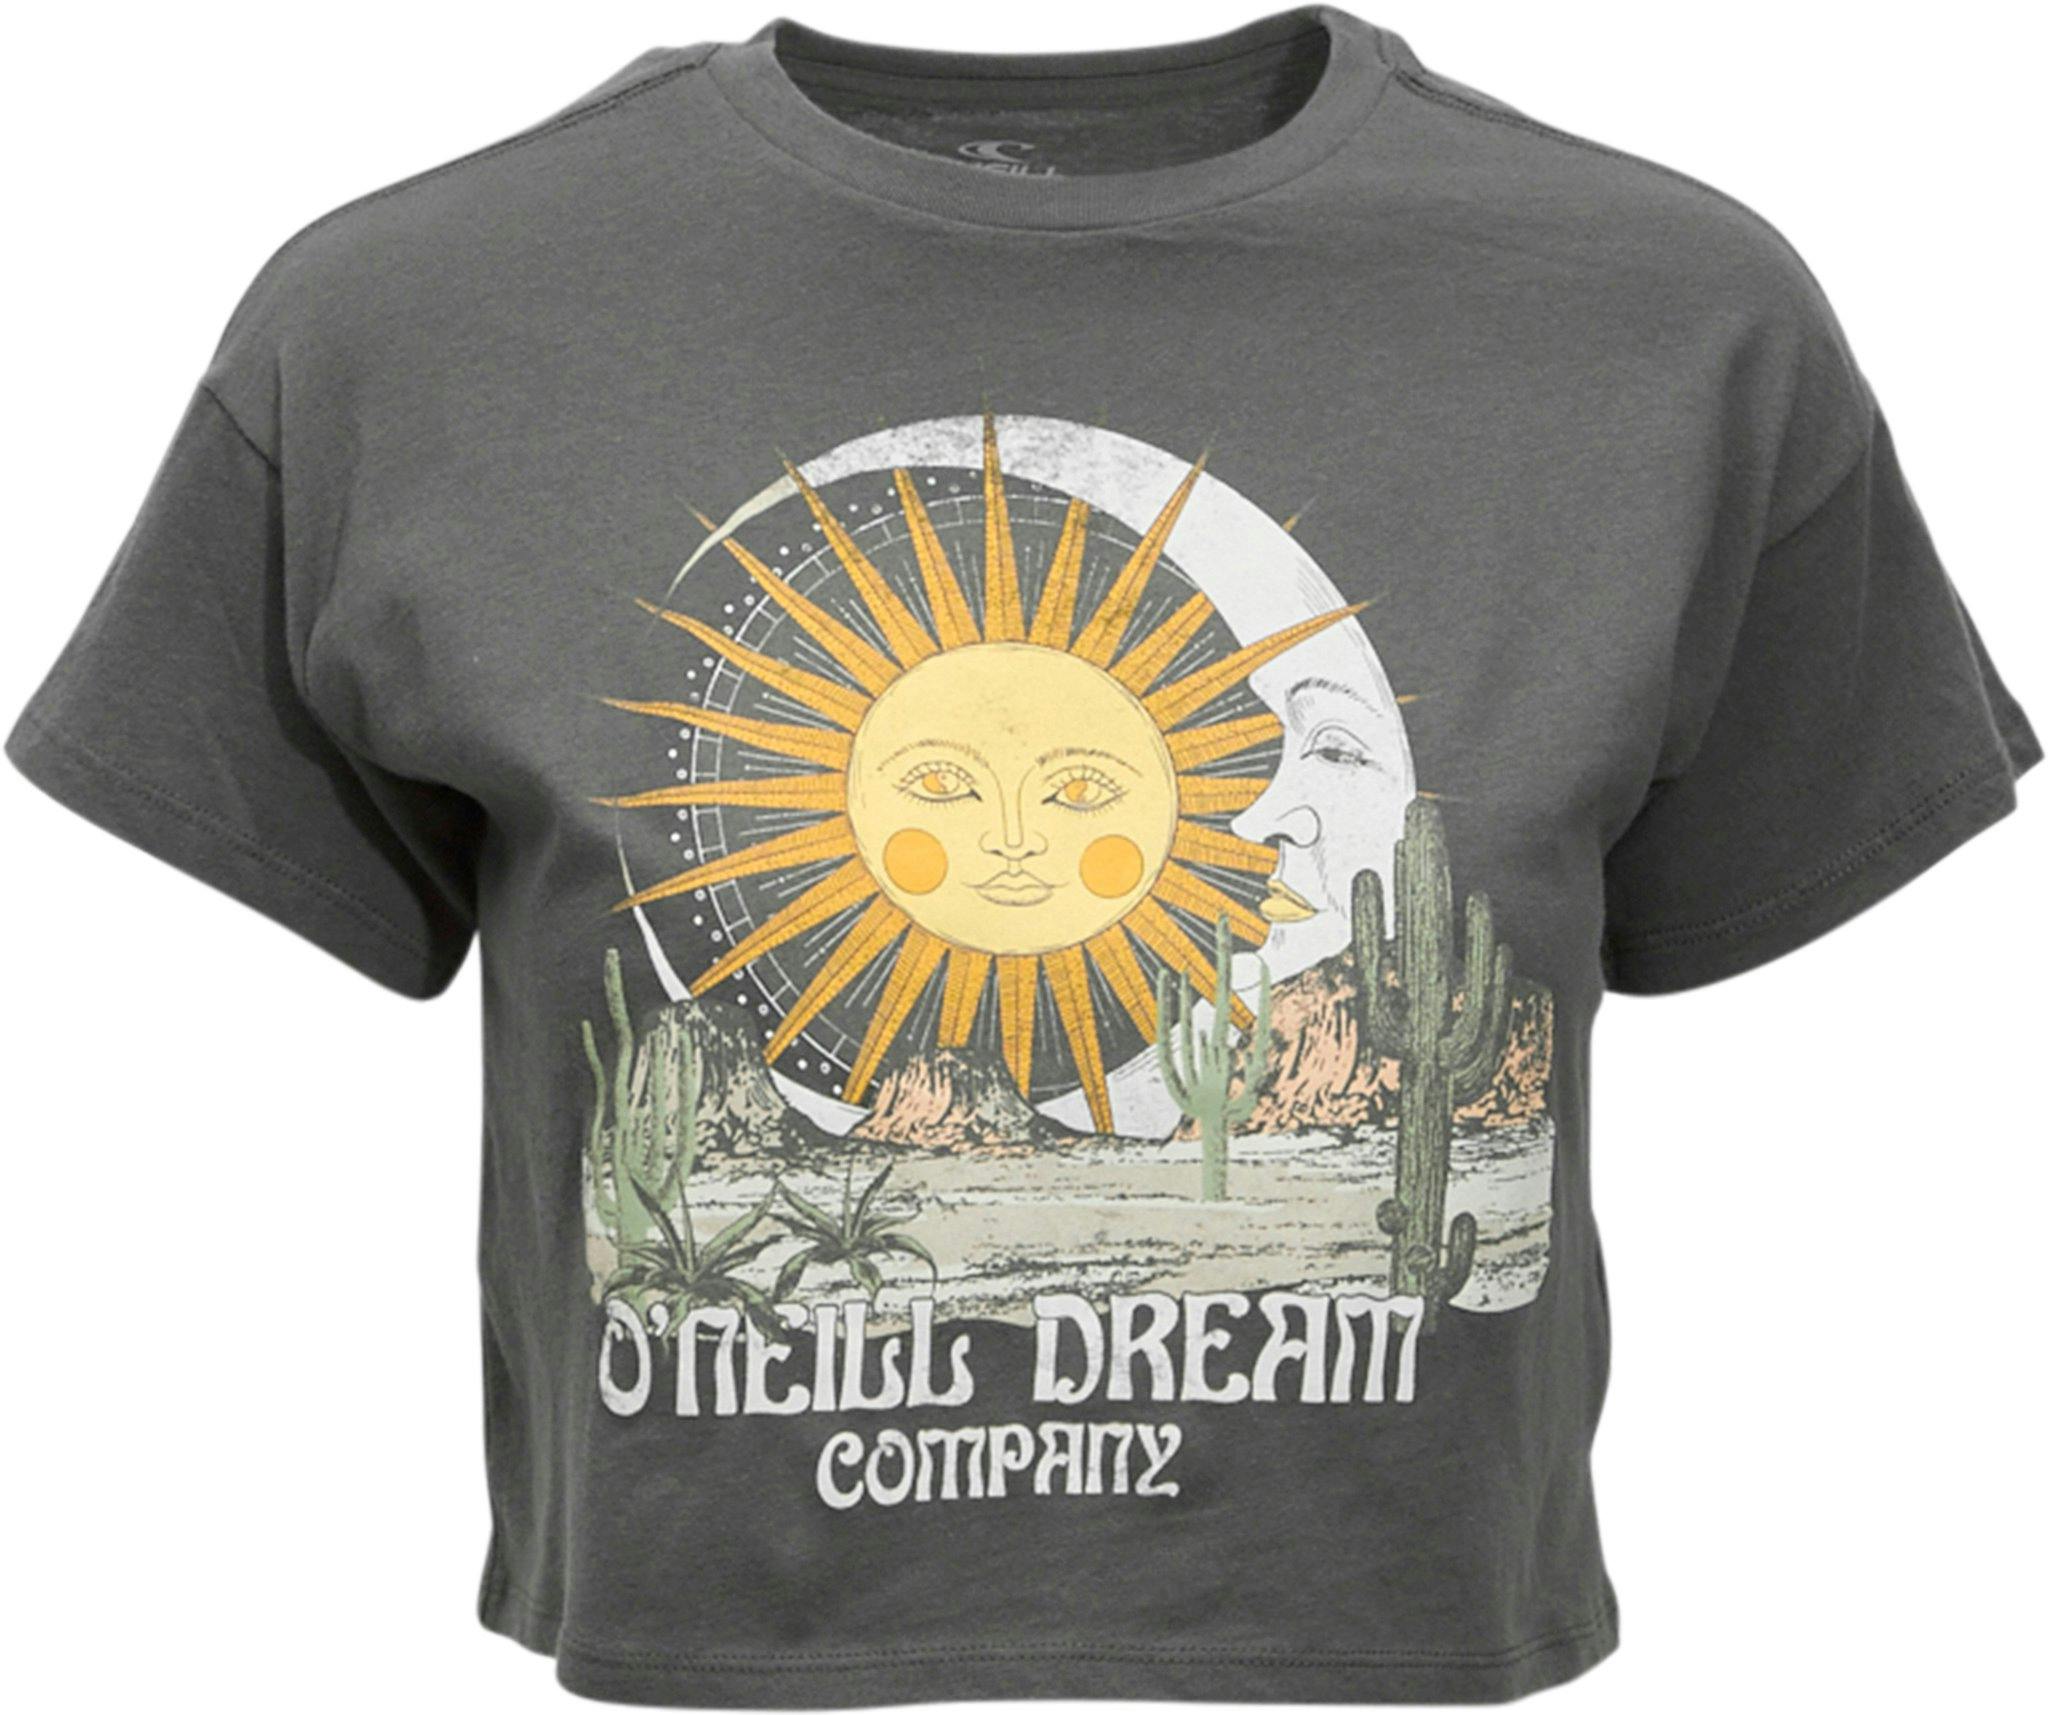 Product image for Desert Dream T-Shirt - Girls